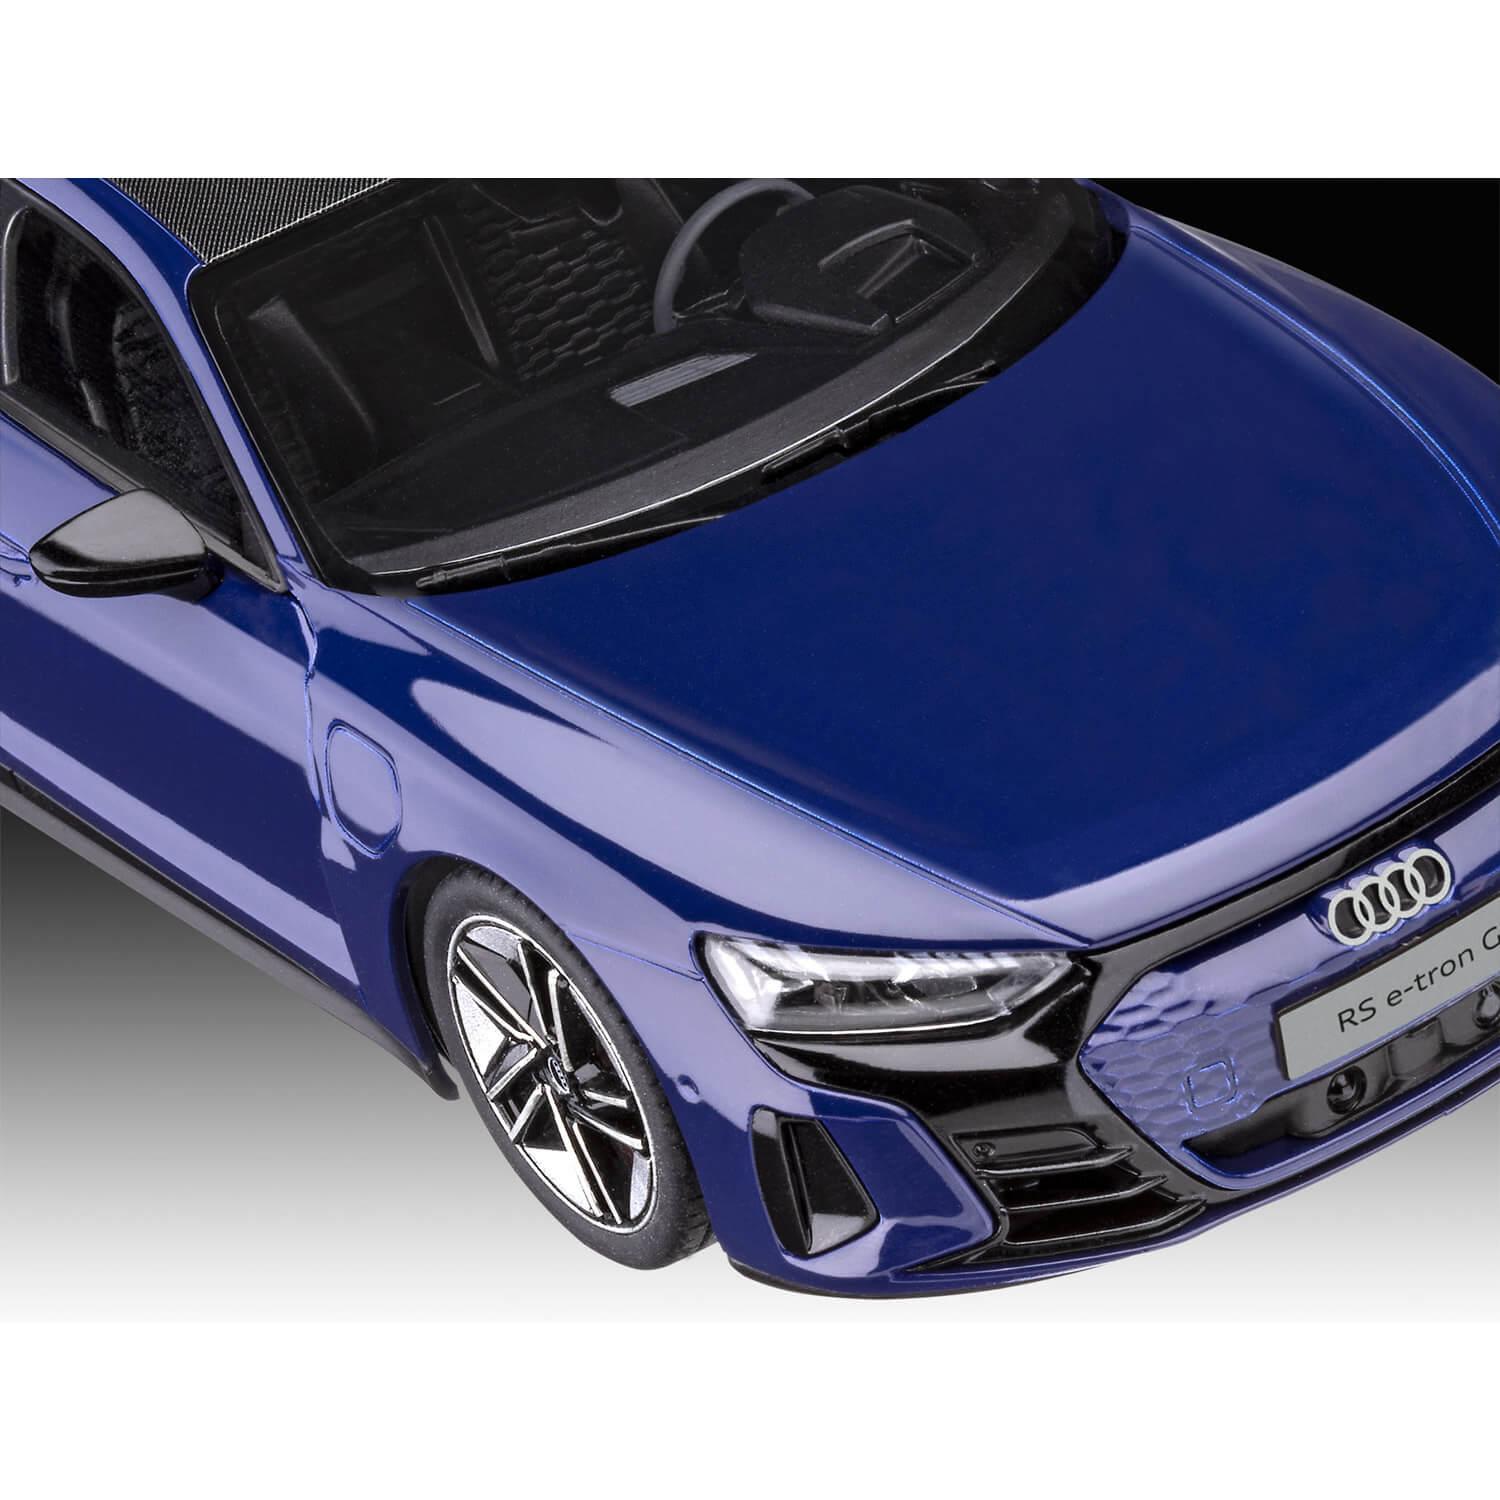 Maqueta de coche: Juego de modelos: sistema easy-click: Audi e-tron GT